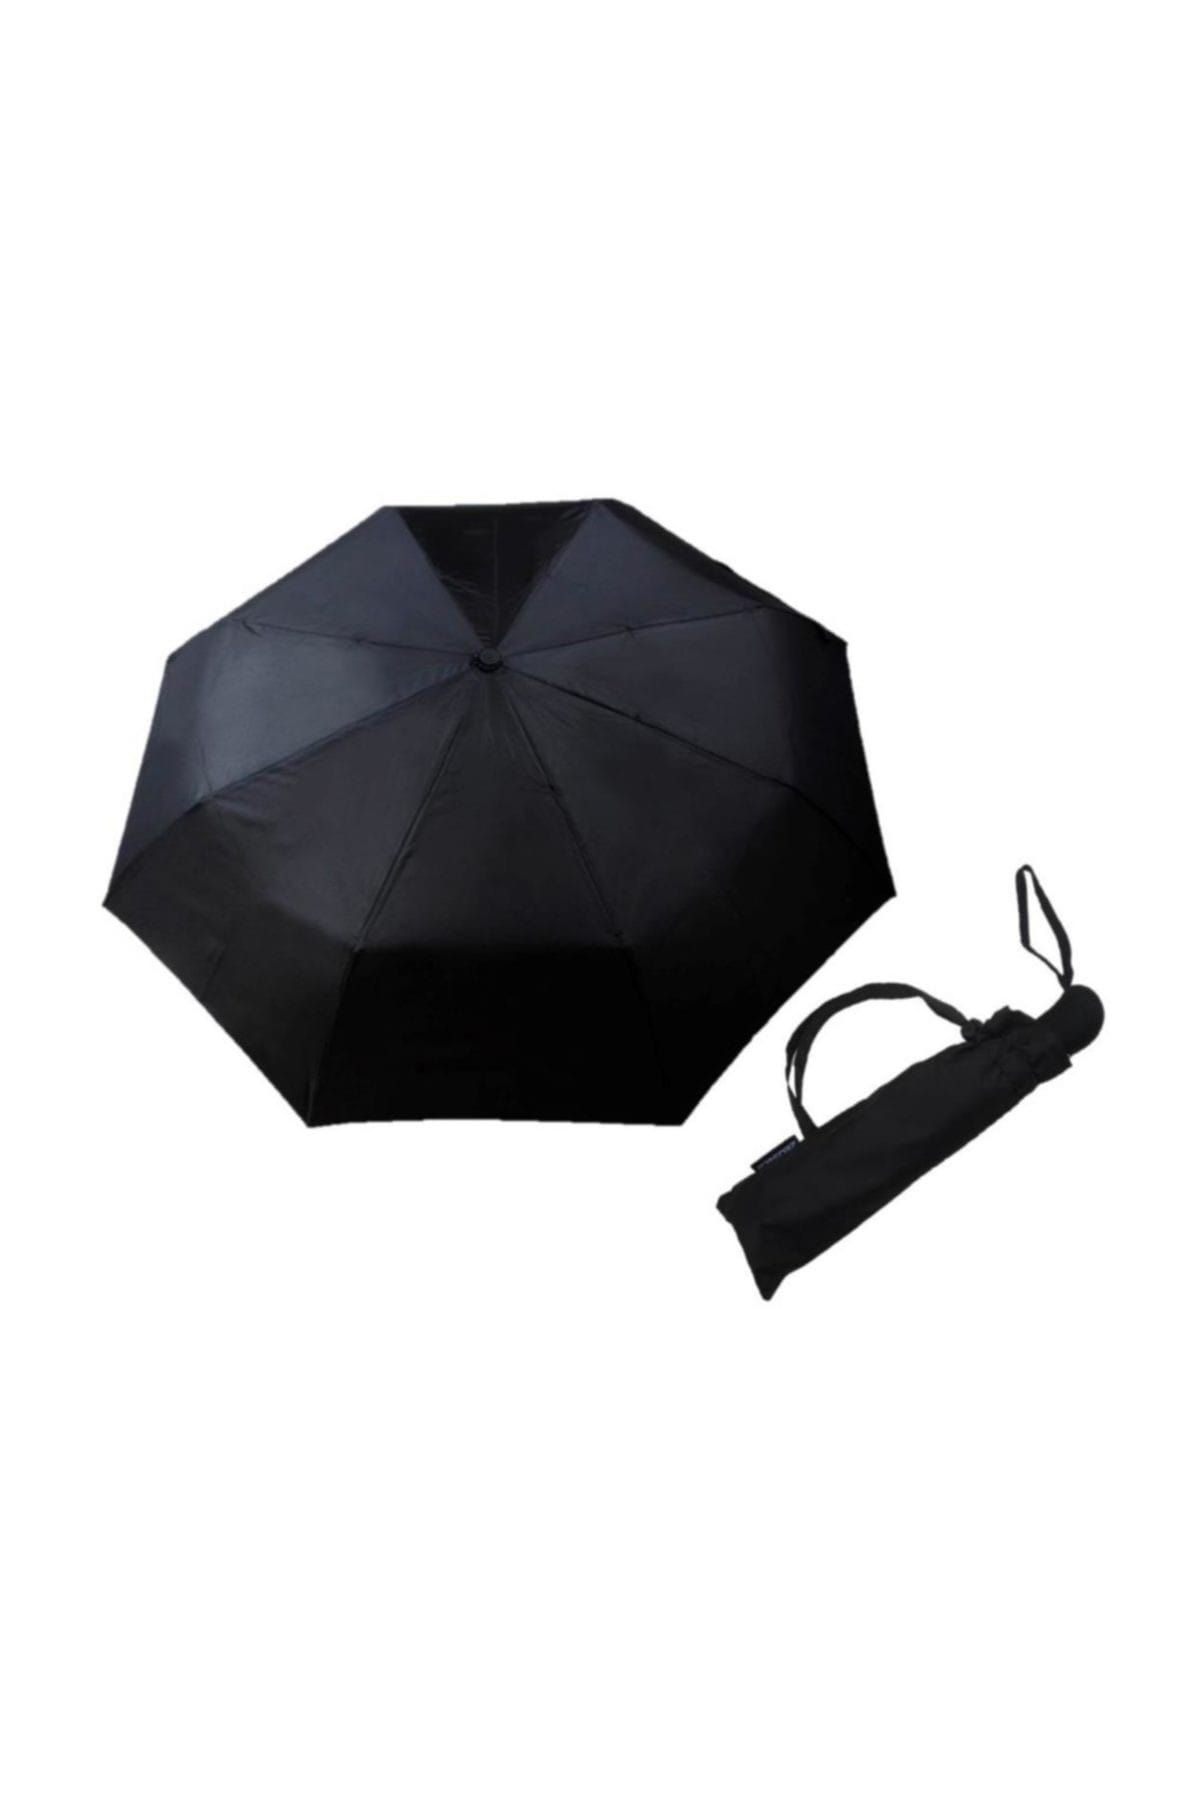 Zeus Co Şemsiye Siyah Otomatik Rüzgarda Kırılmayan